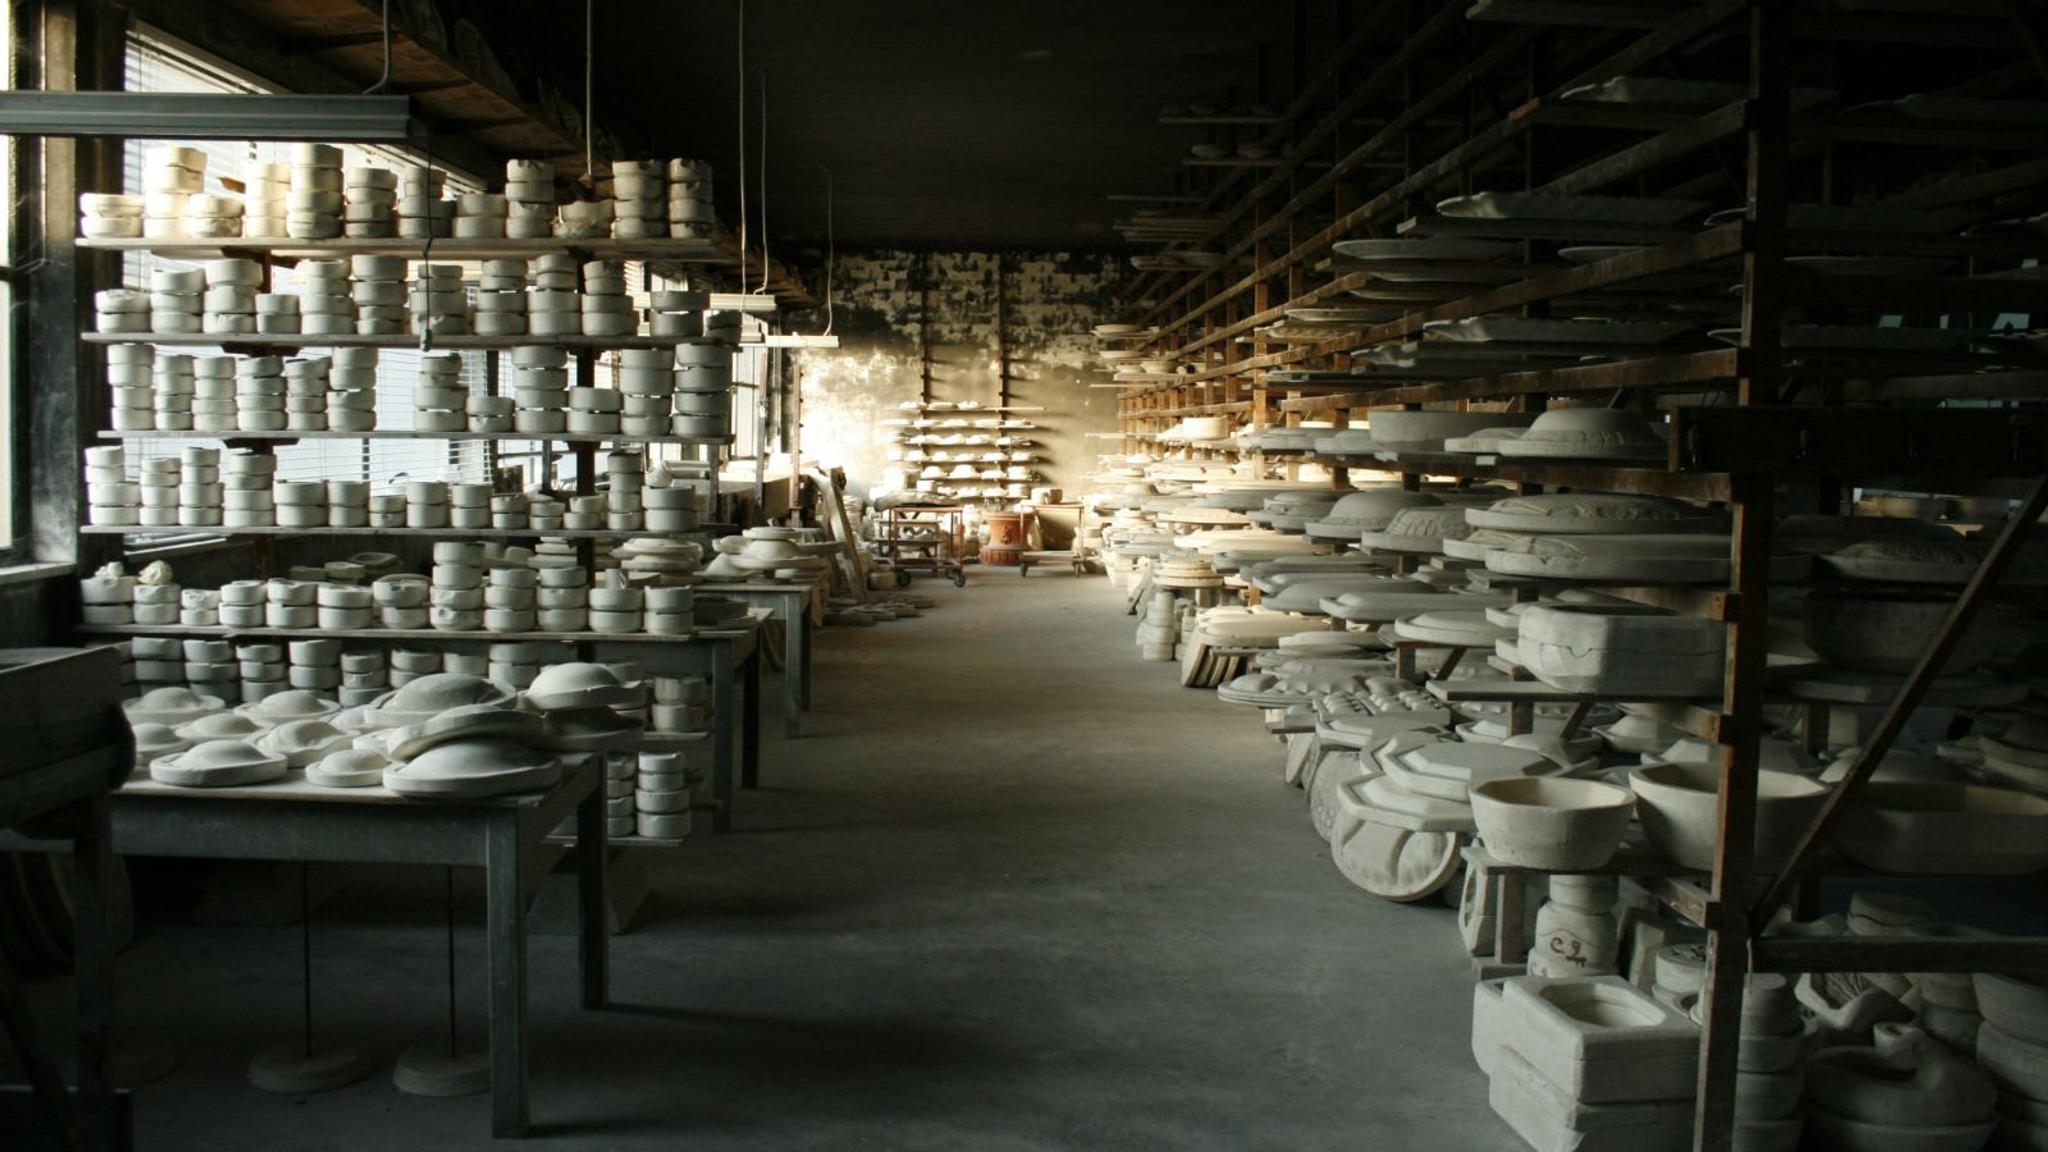 Paolo Polloniato's ceramic workshop in Nove a small town near Venice.